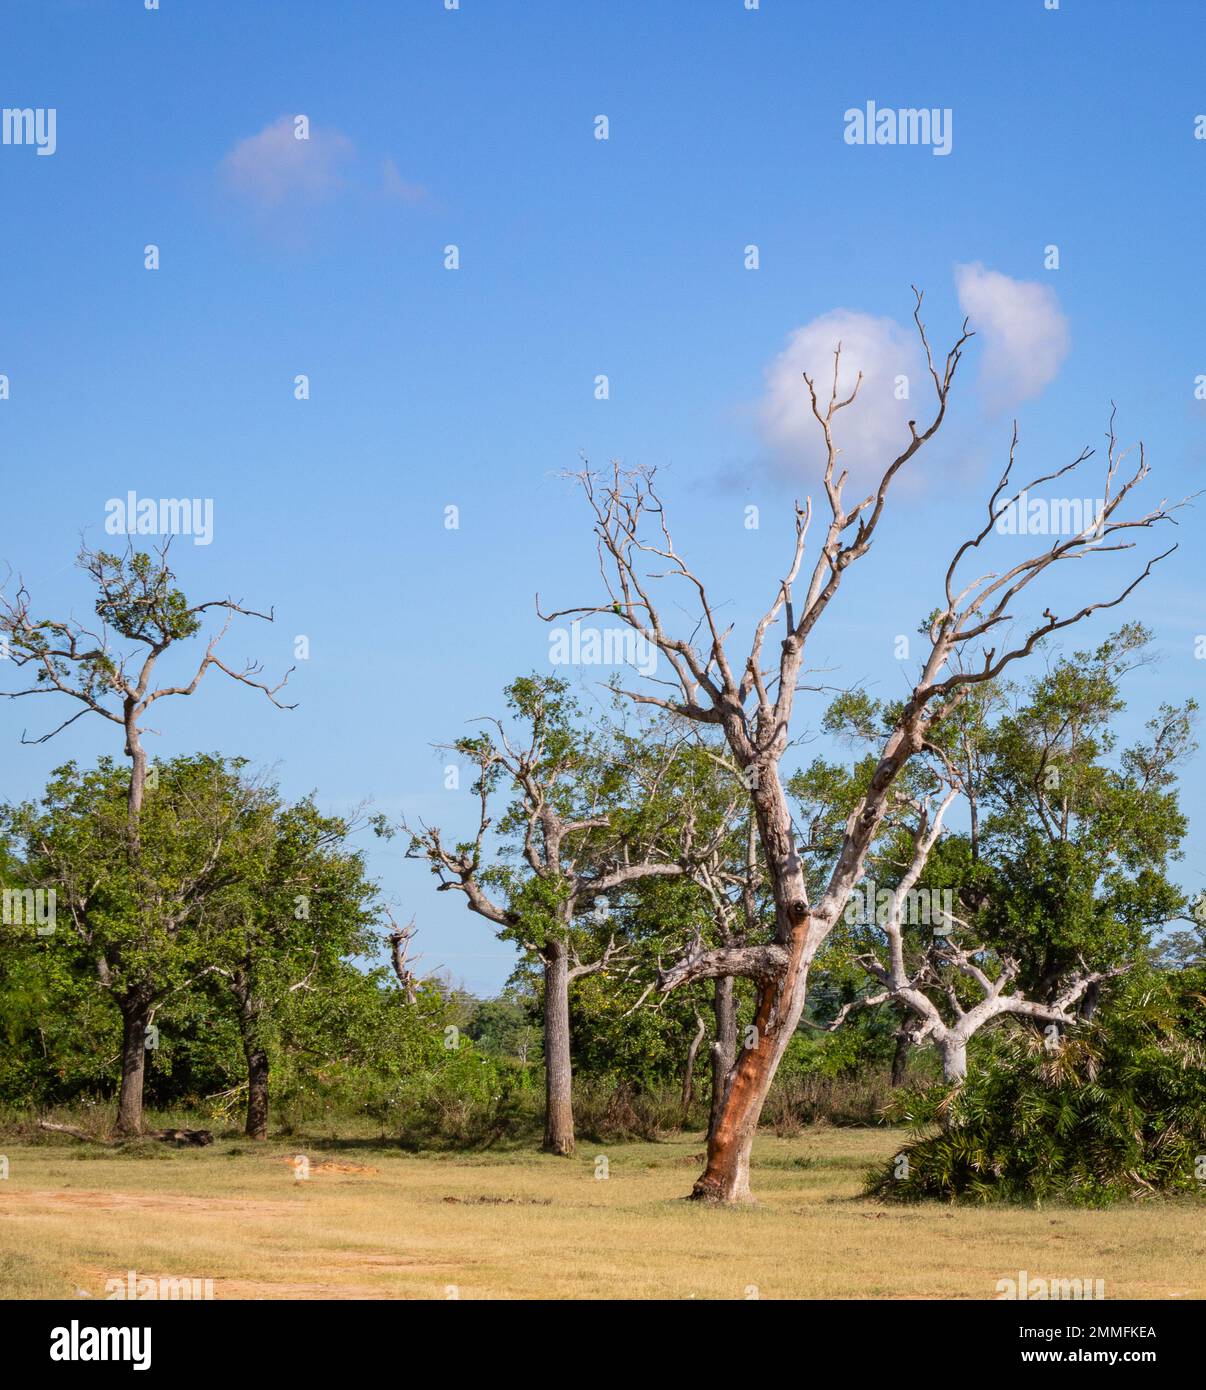 arbre sec mort parmi les arbres vivants dans la forêt. hambantota, sri lanka. Banque D'Images